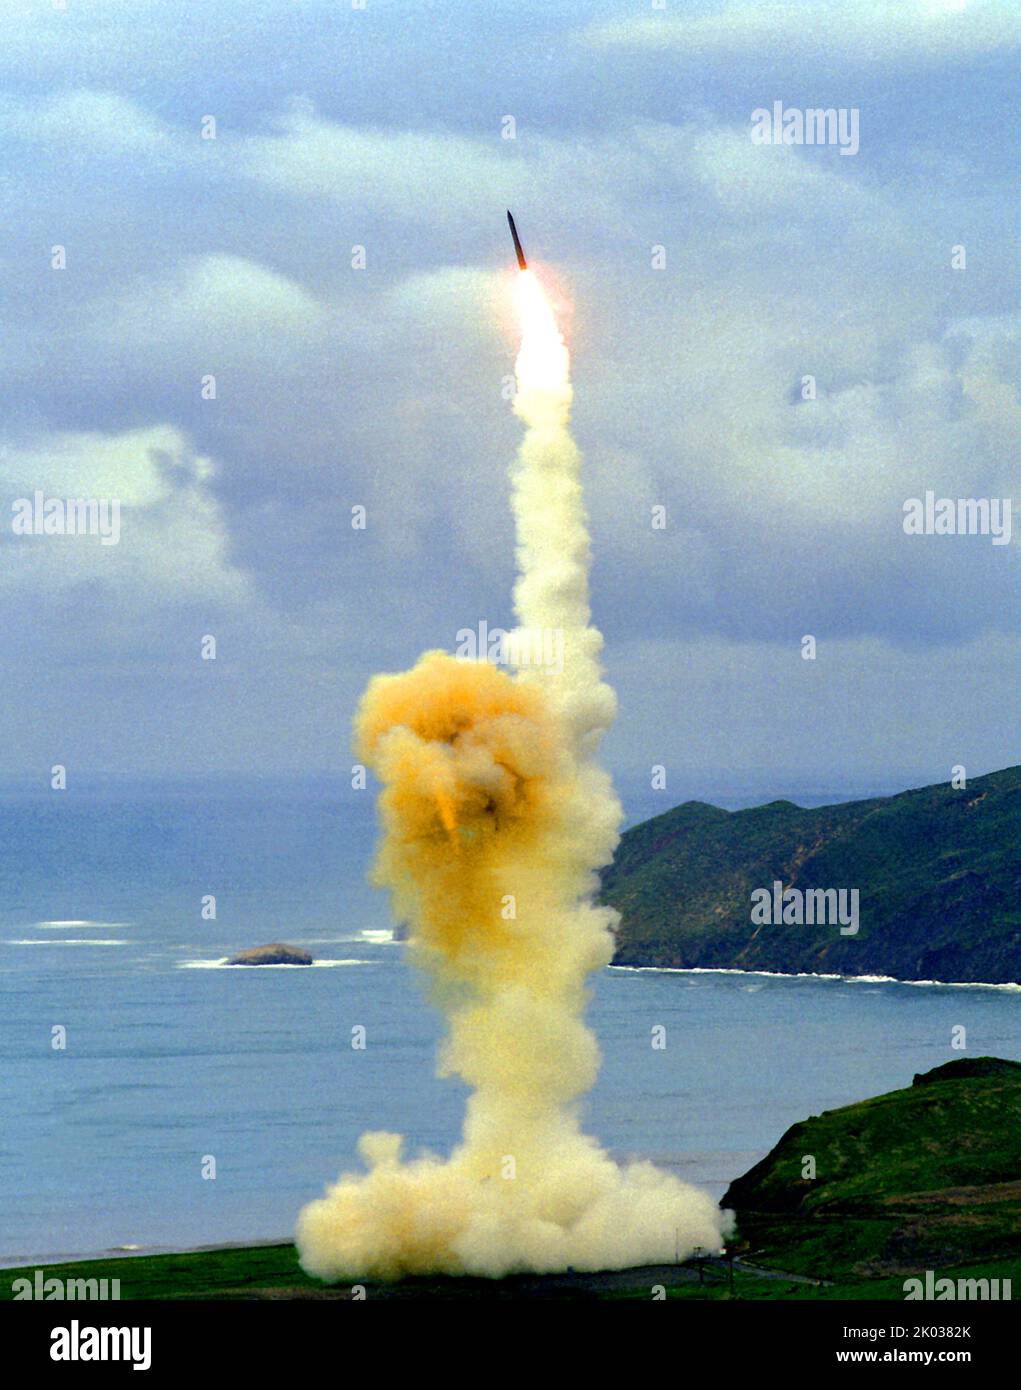 Le Minuteman LGM-30 est un missile balistique intercontinental terrestre américain (ICBM), en service avec le Commandement de la frappe globale de la Force aérienne. En 2021, la version LGM-30G Minuteman III est le seul ICBM terrestre en service aux États-Unis et représente la branche terrestre de la triade nucléaire américaine Banque D'Images